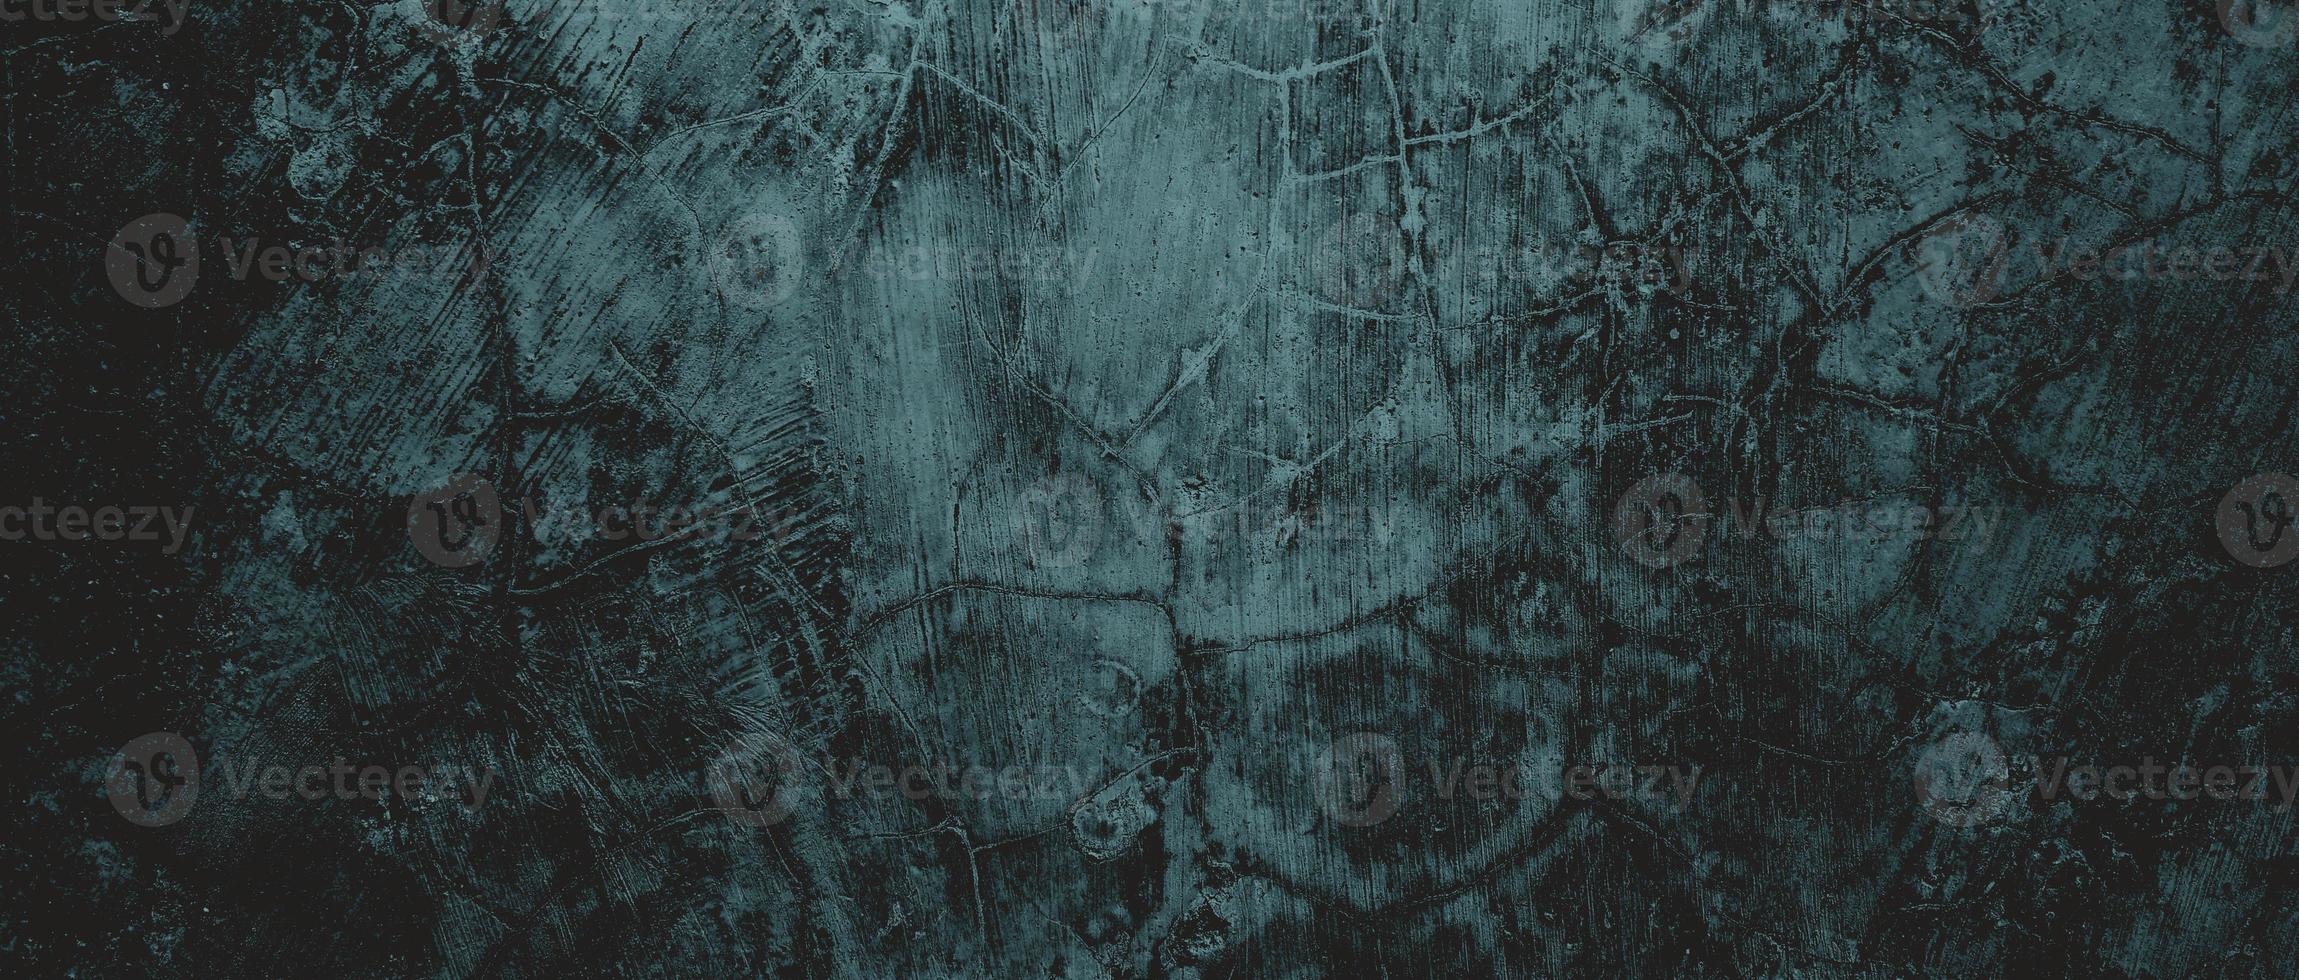 Wand voller Kratzer. grungy zementbeschaffenheit für hintergrund, unheimliche dunkle wand.schwarze wand foto